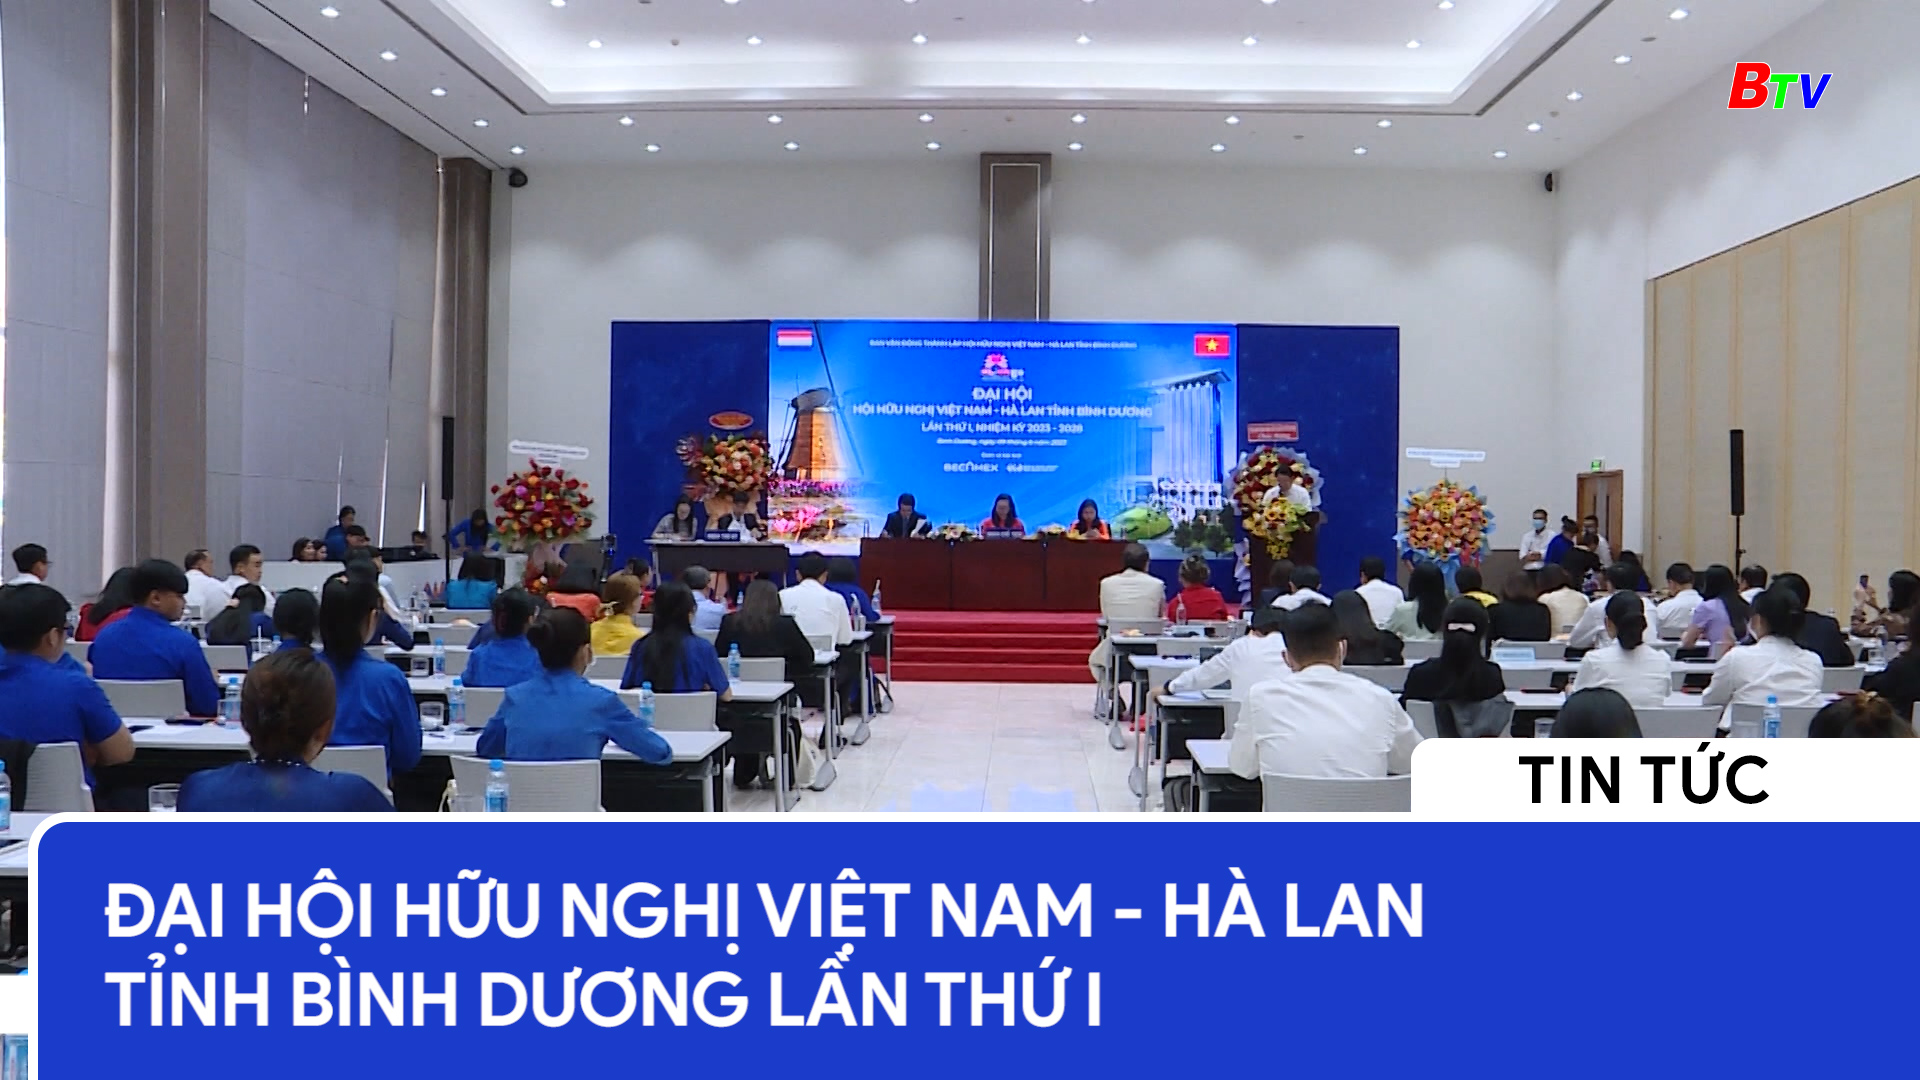 Đại hội hữu nghị Việt Nam - Hà Lan tỉnh Bình Dương lần thứ I